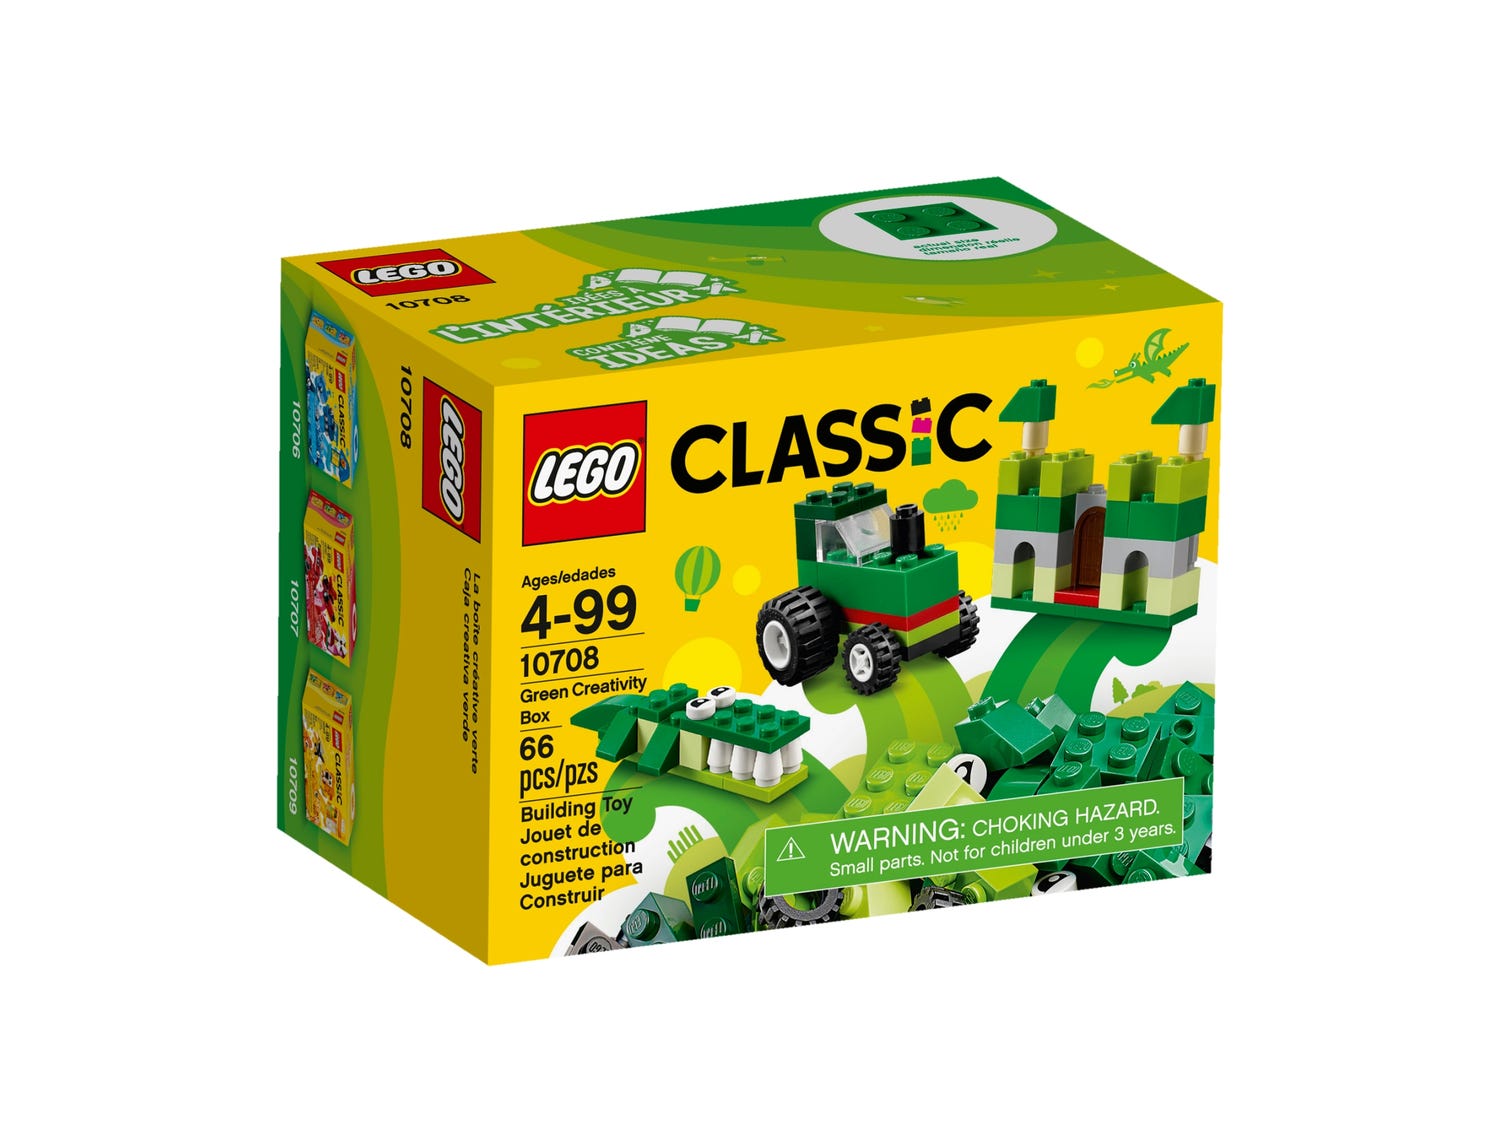 Snoep Omhoog Bij elkaar passen Green Creativity Box 10708 | Classic | Buy online at the Official LEGO®  Shop US